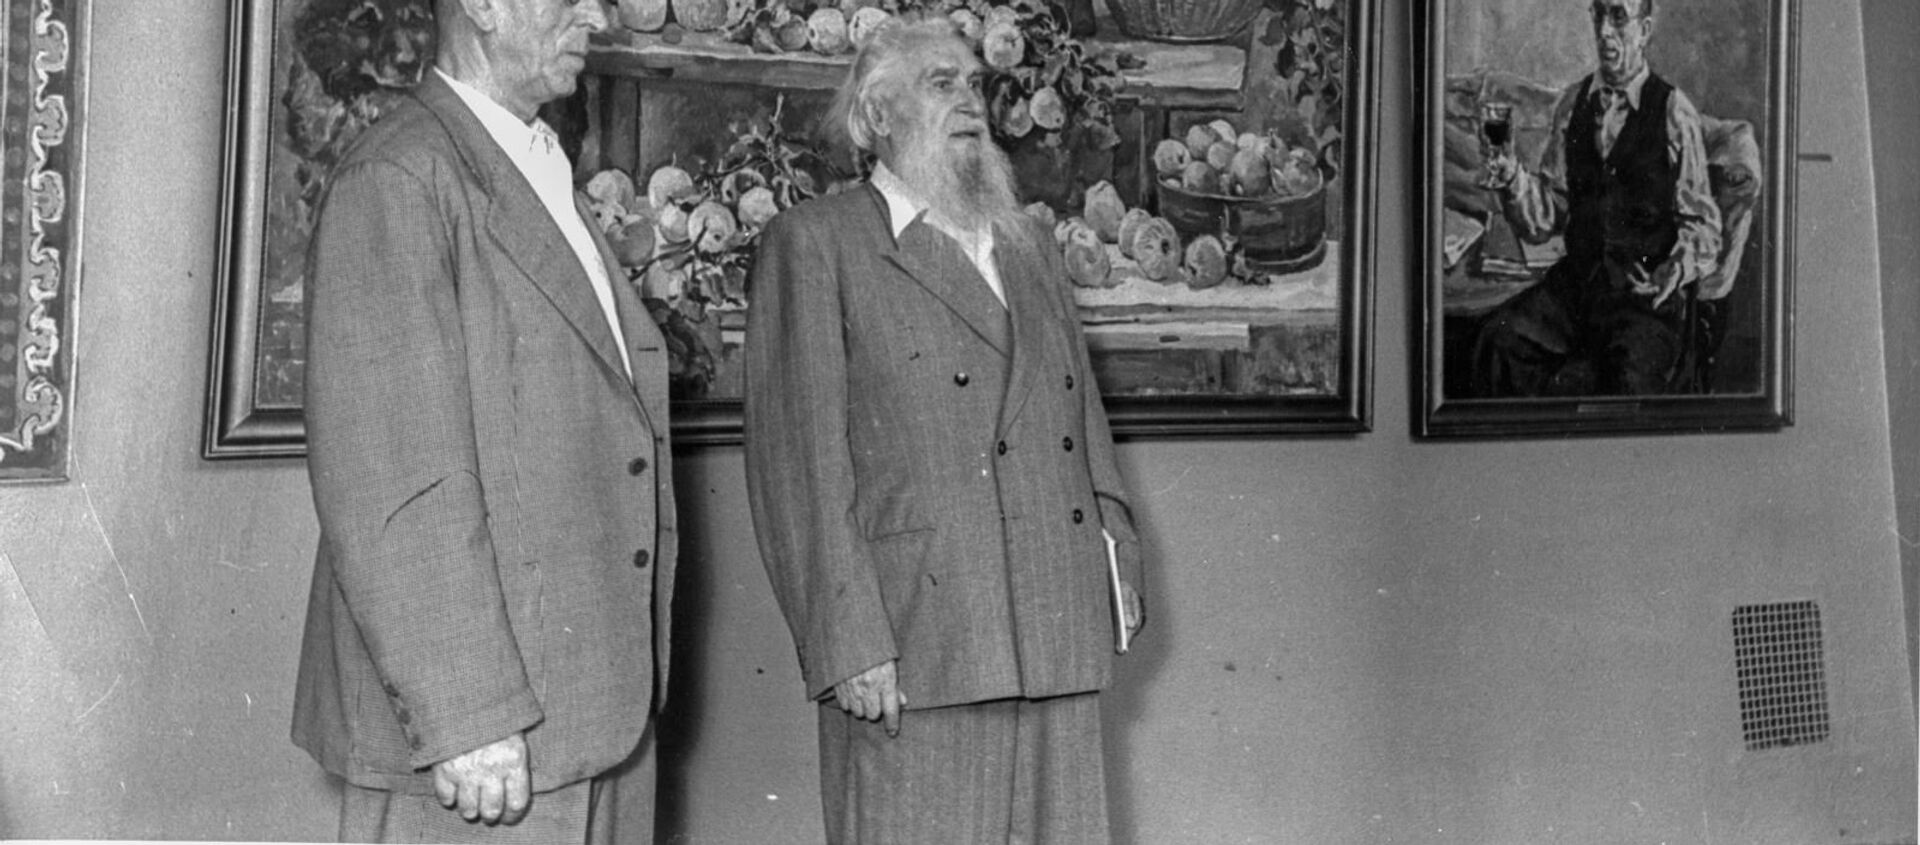 El pintor y escultor español, Alberto Sánchez (izqd) y el escultor ruso, Sergúei Koniónkov - Sputnik Mundo, 1920, 15.05.2019